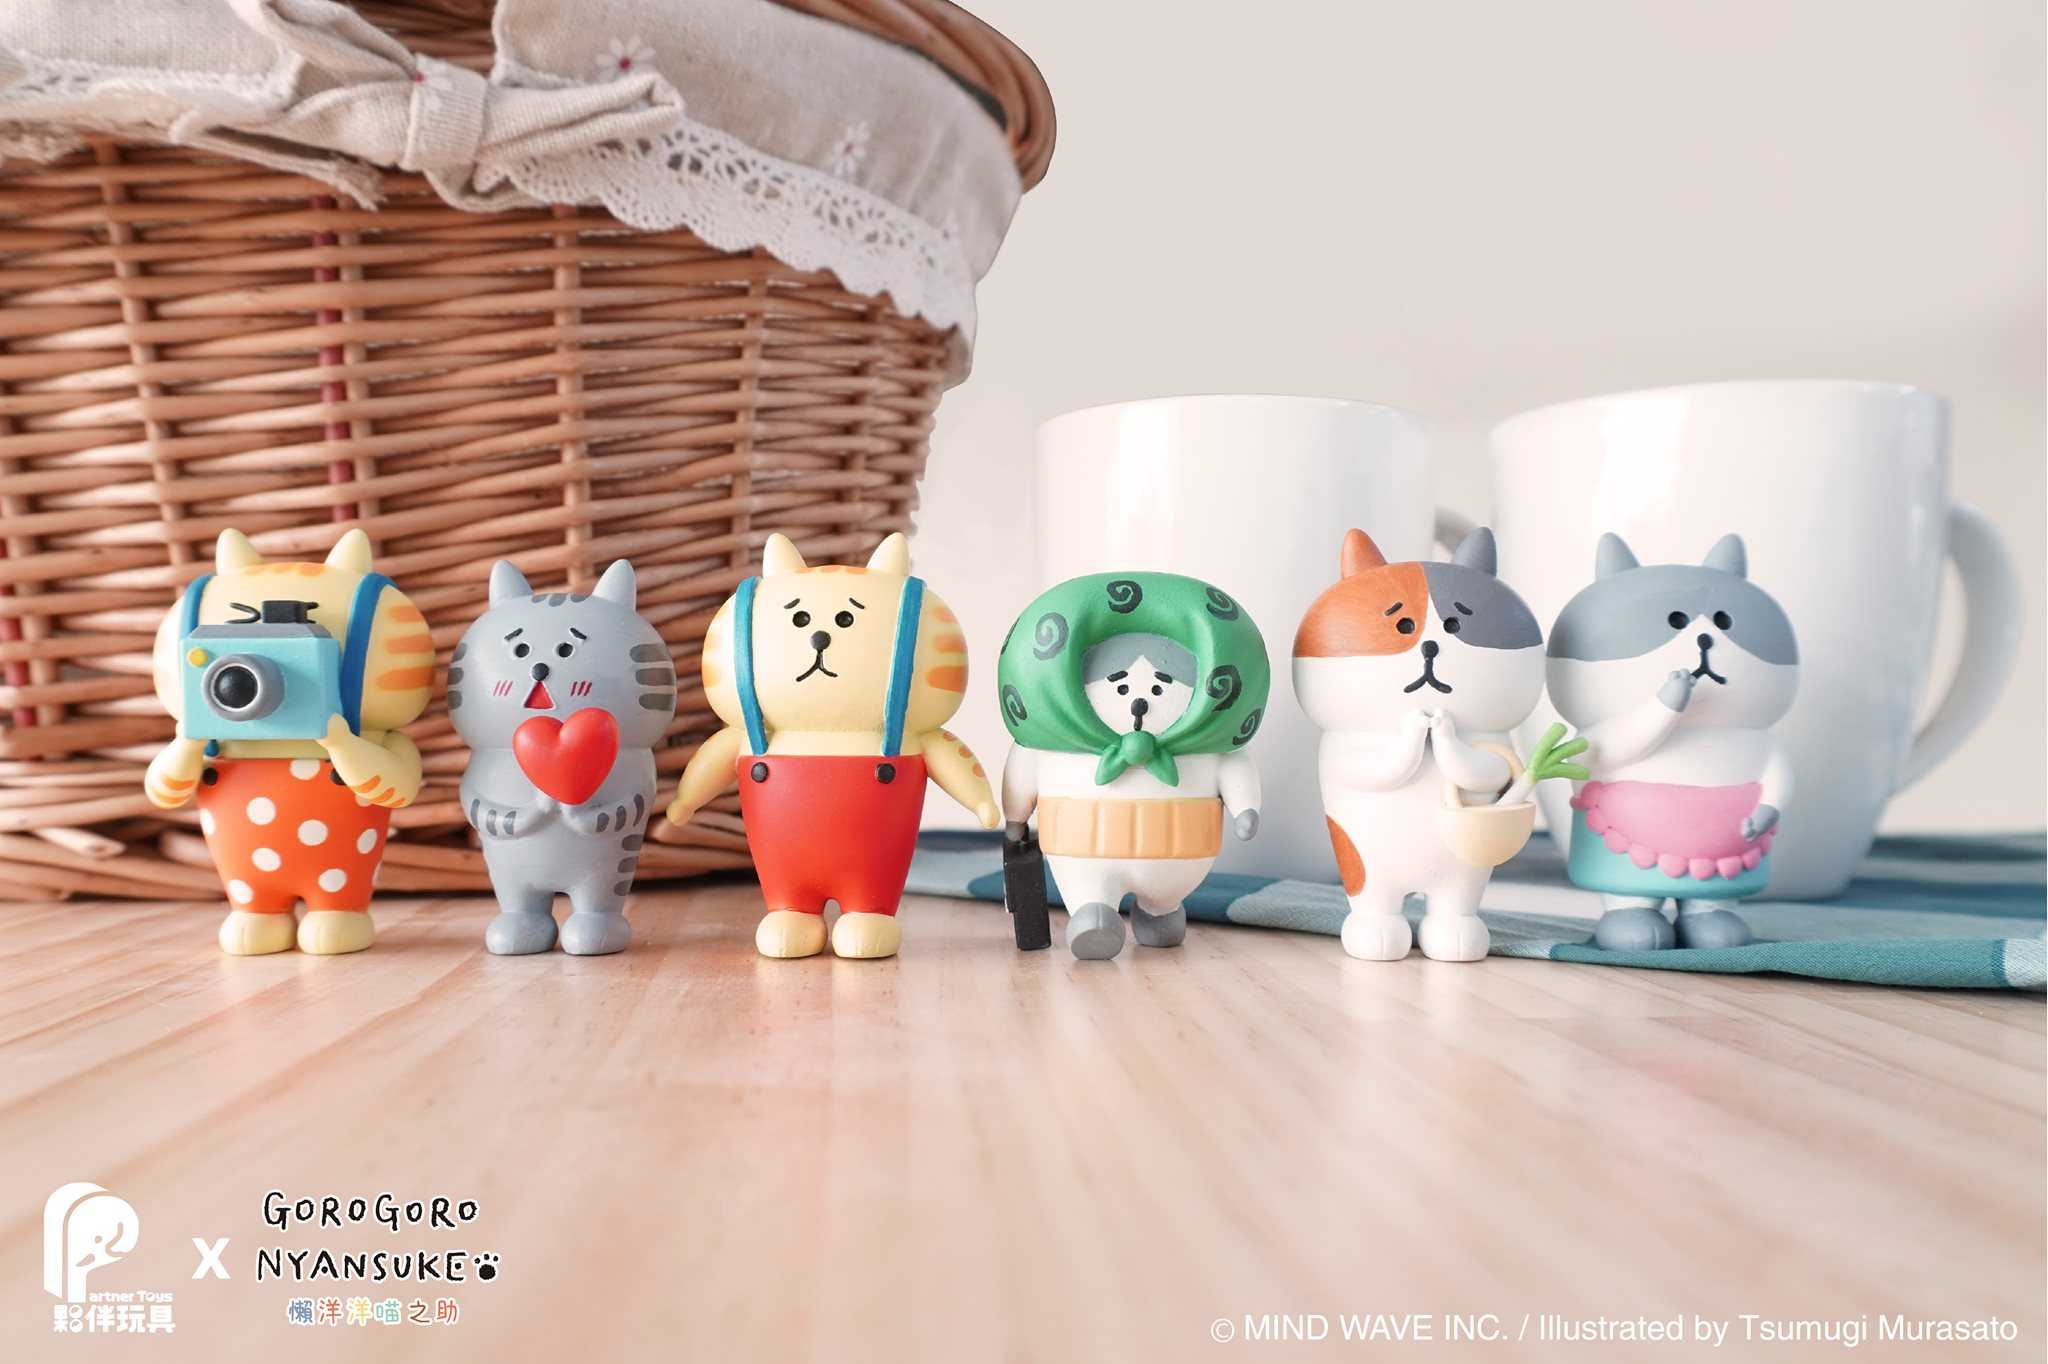 【玩具之森】《現貨》 夥伴玩具x日本插畫家 村里つむぎ 吊帶貓 懶洋洋喵之助 扭蛋 轉蛋  (全套六款出售)